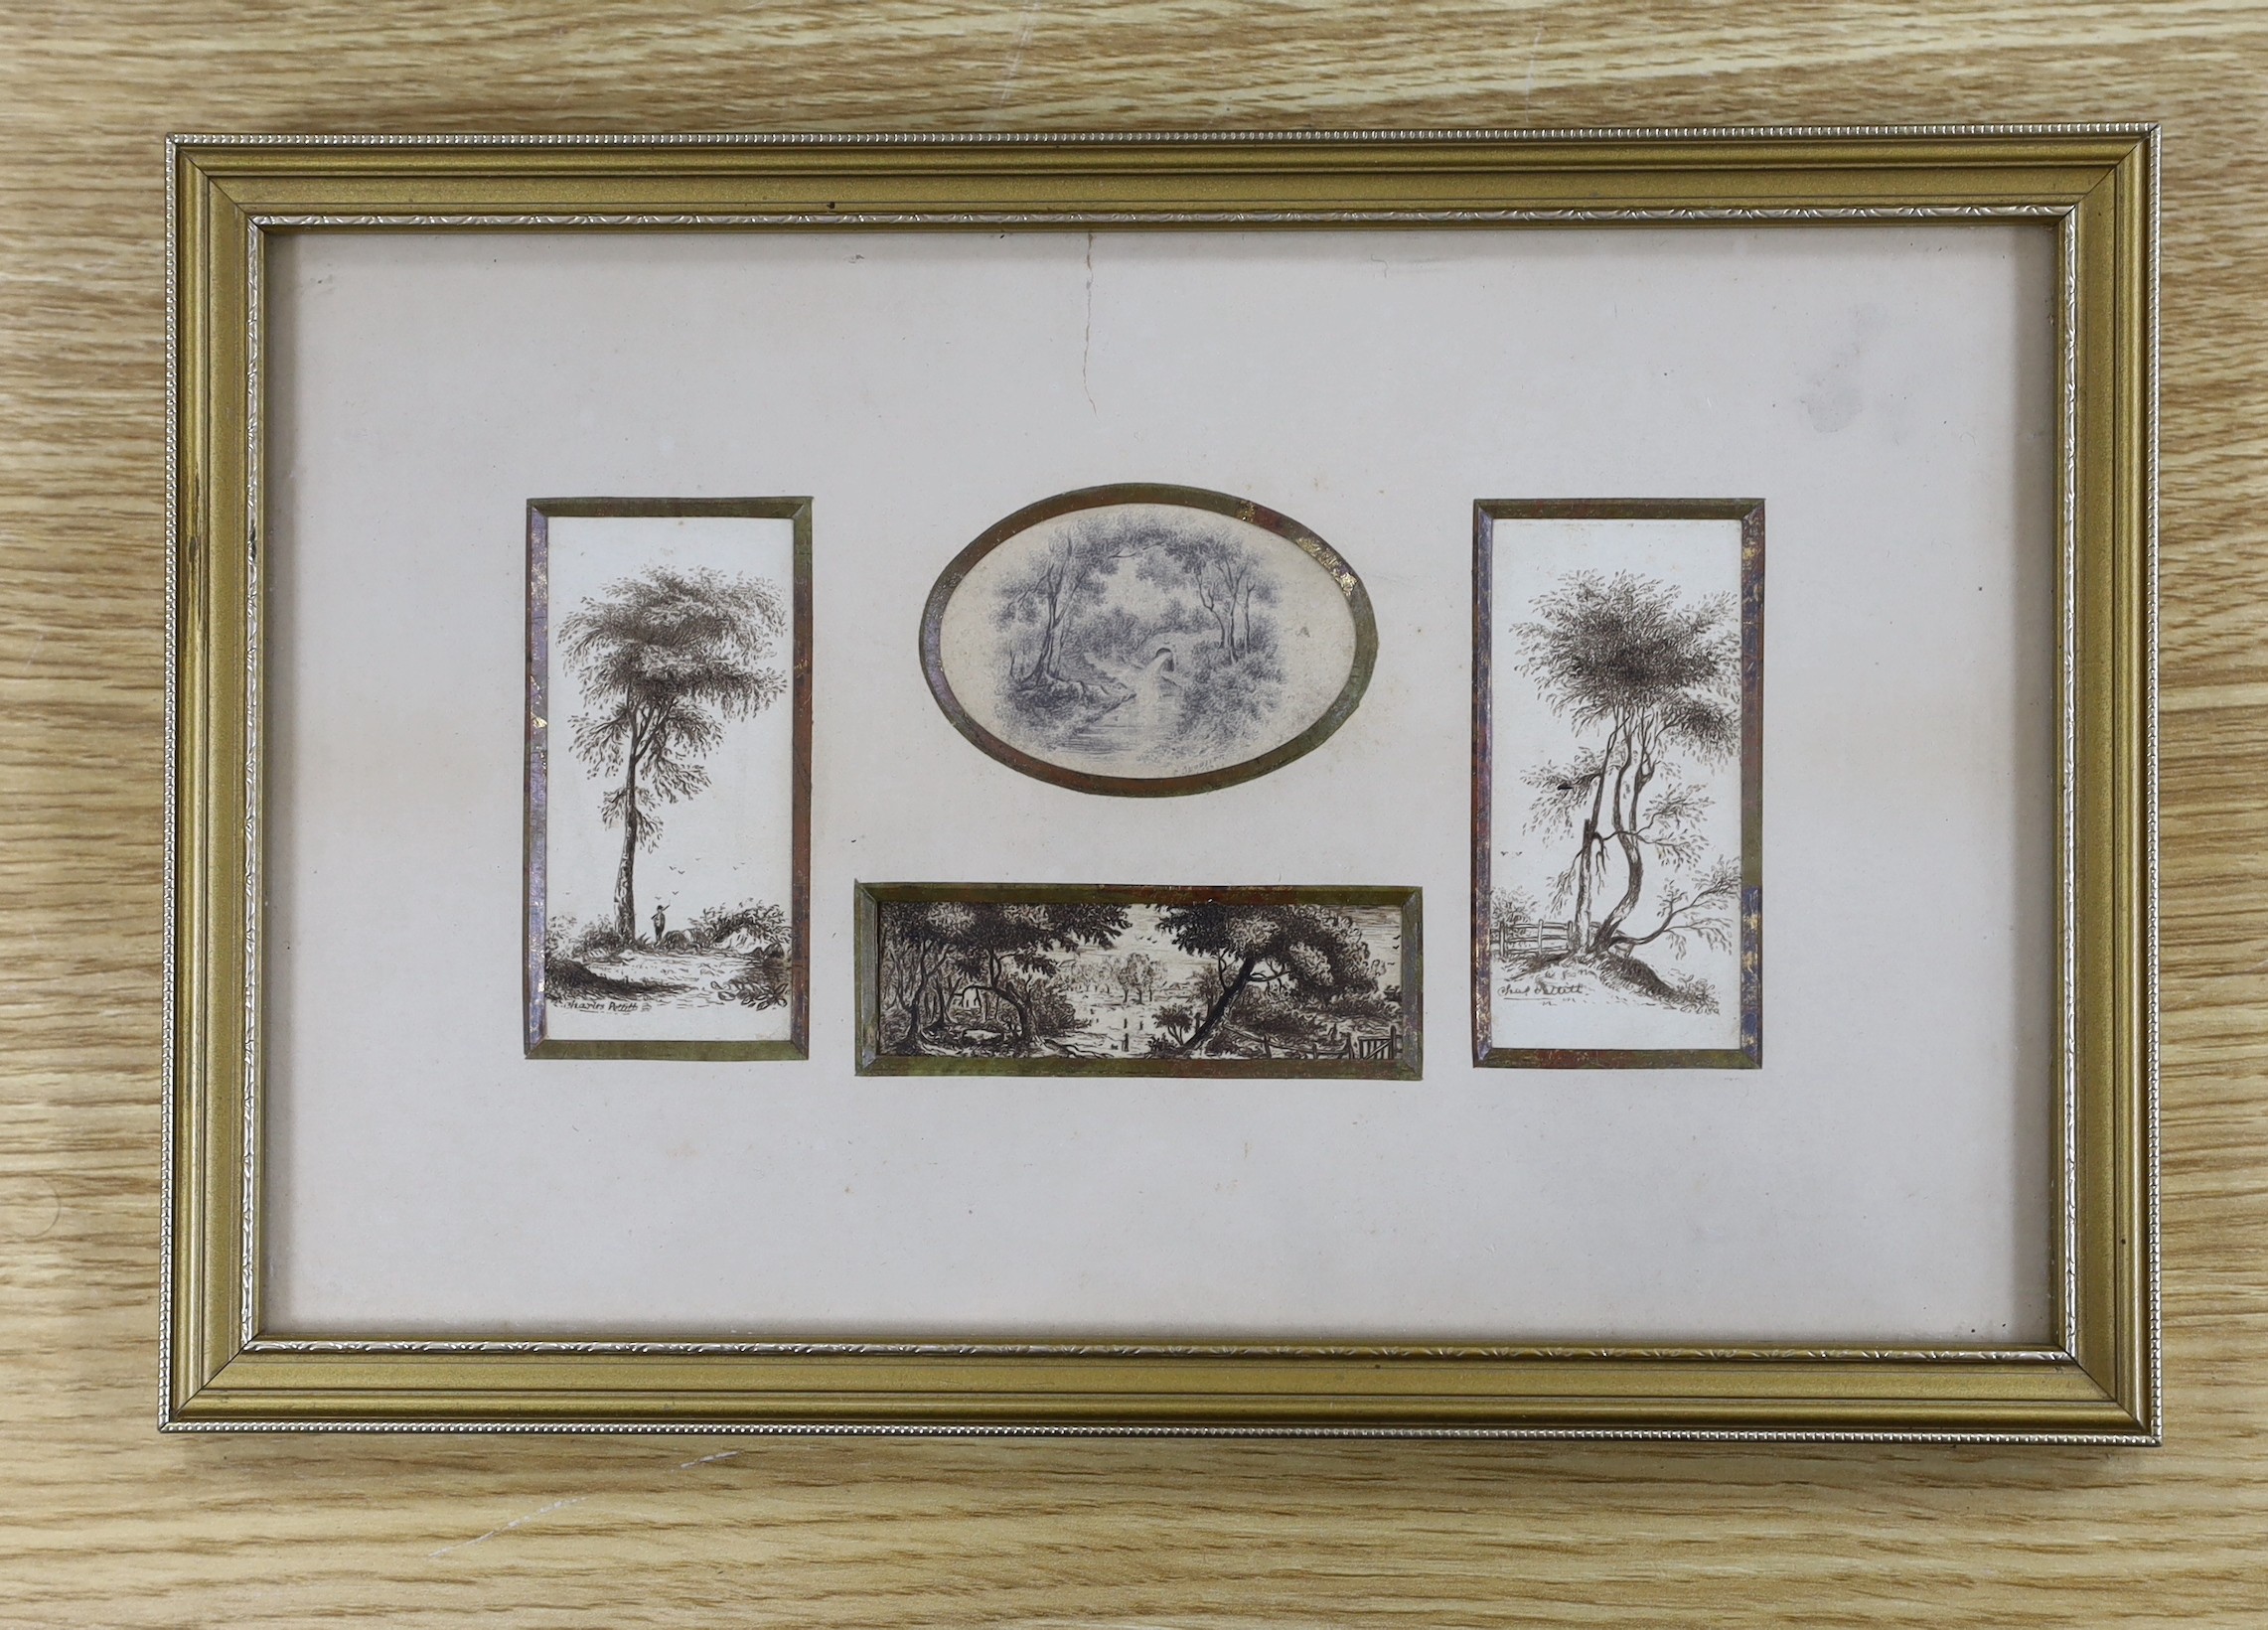 Catherine Spooner c.1850, pen and ink, Landscape vignettes, signed, largest 7 x 3.5cm, framed as one